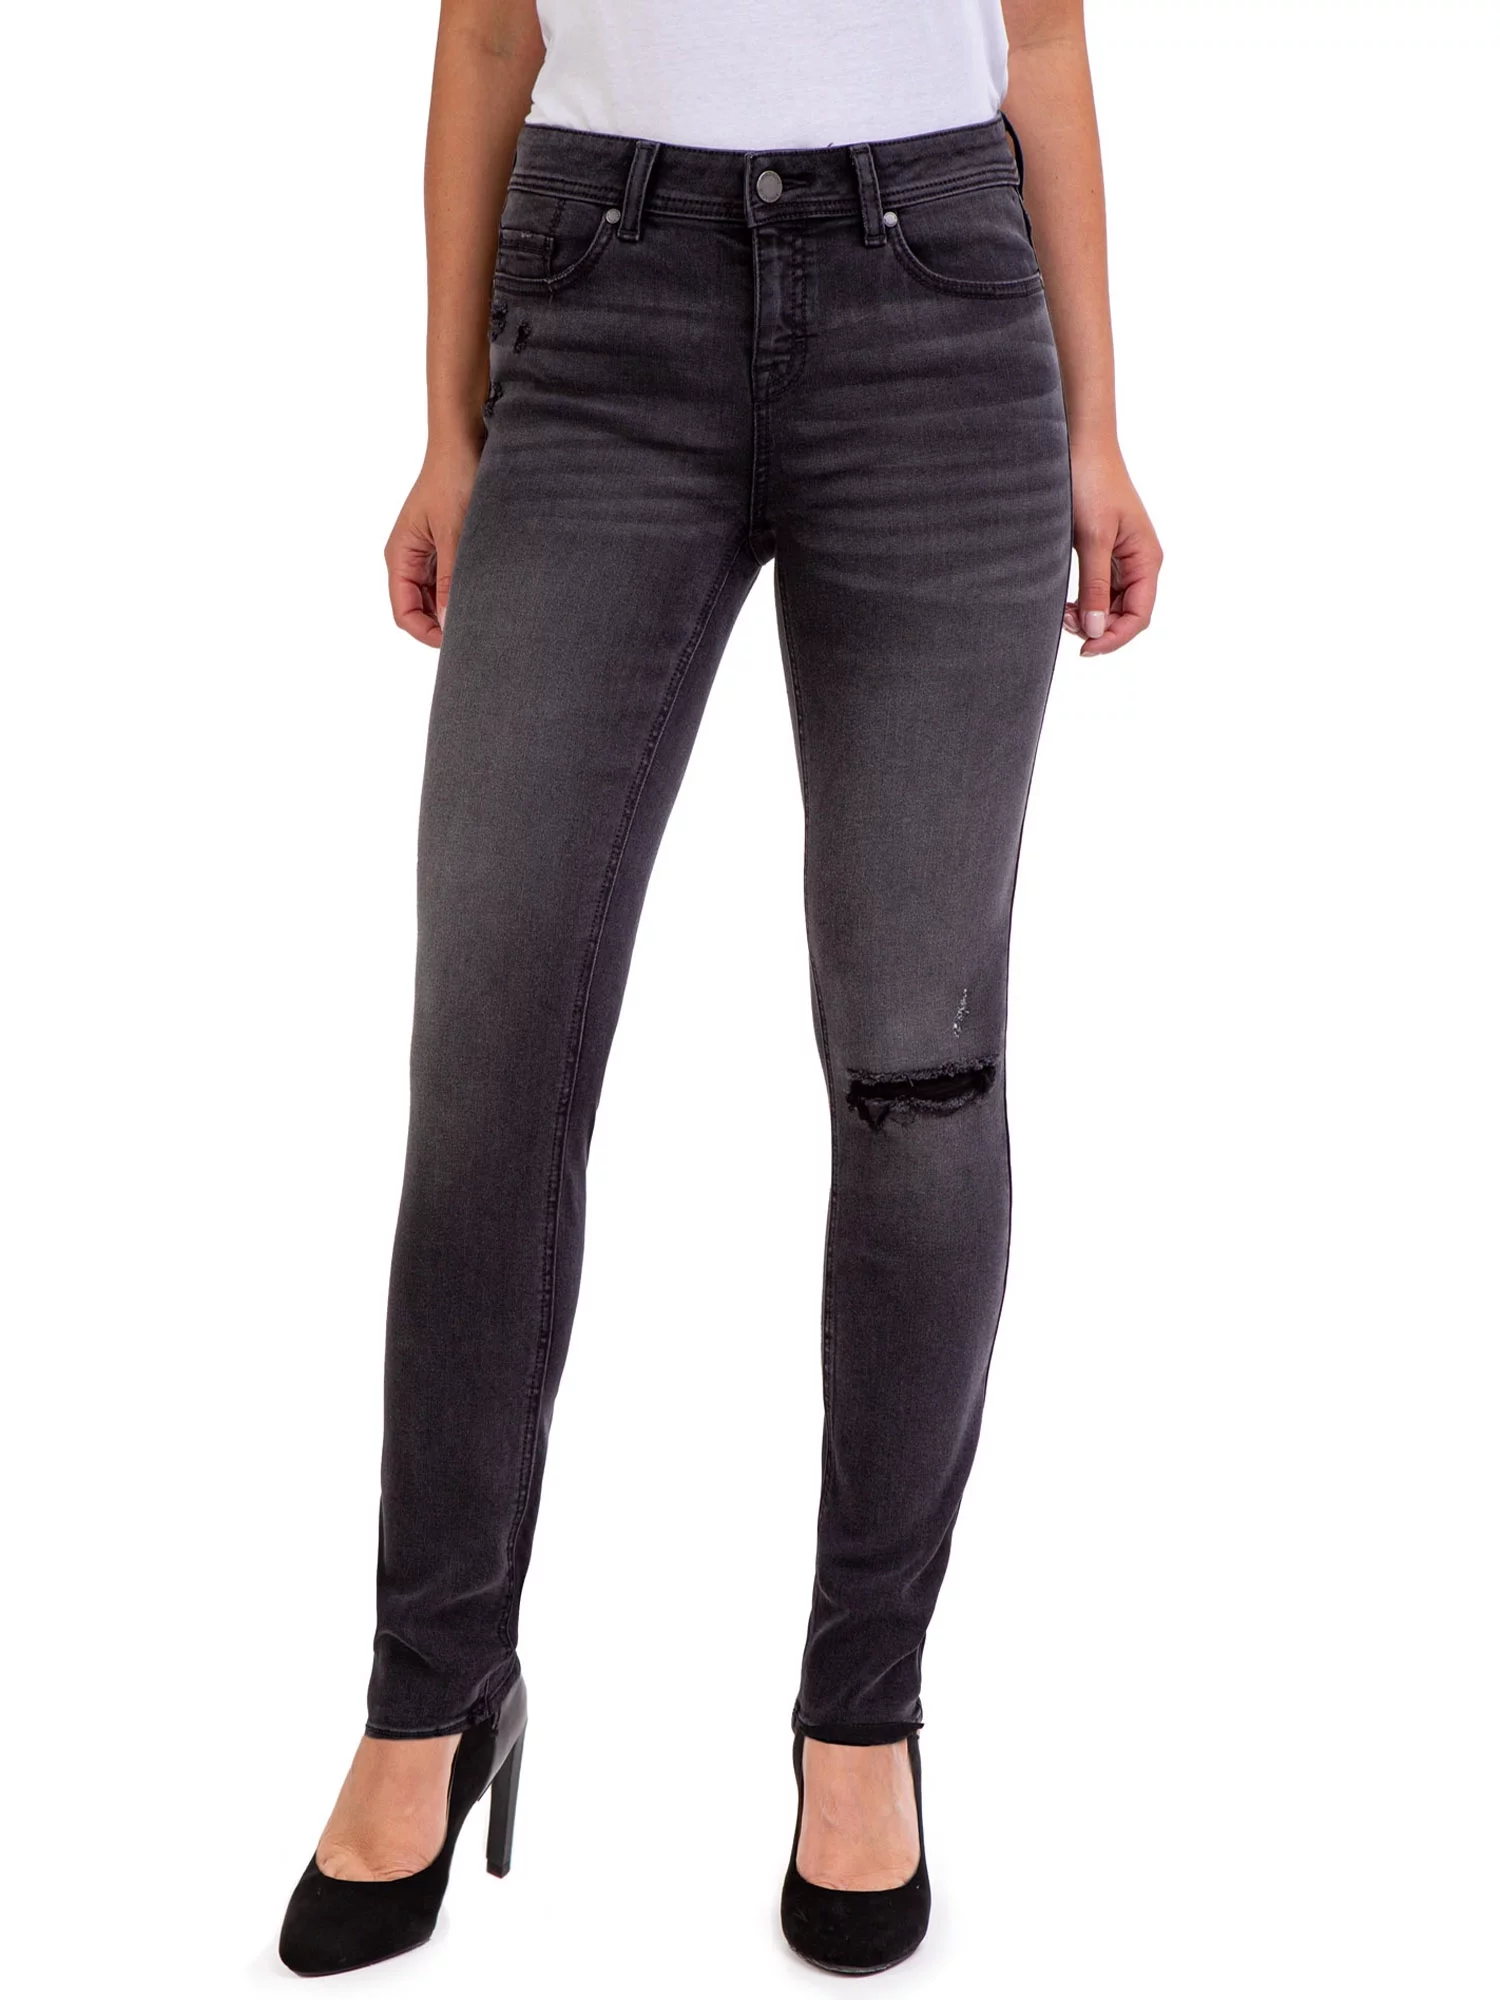 Jordache Women's Mid Rise Skinny Jeans